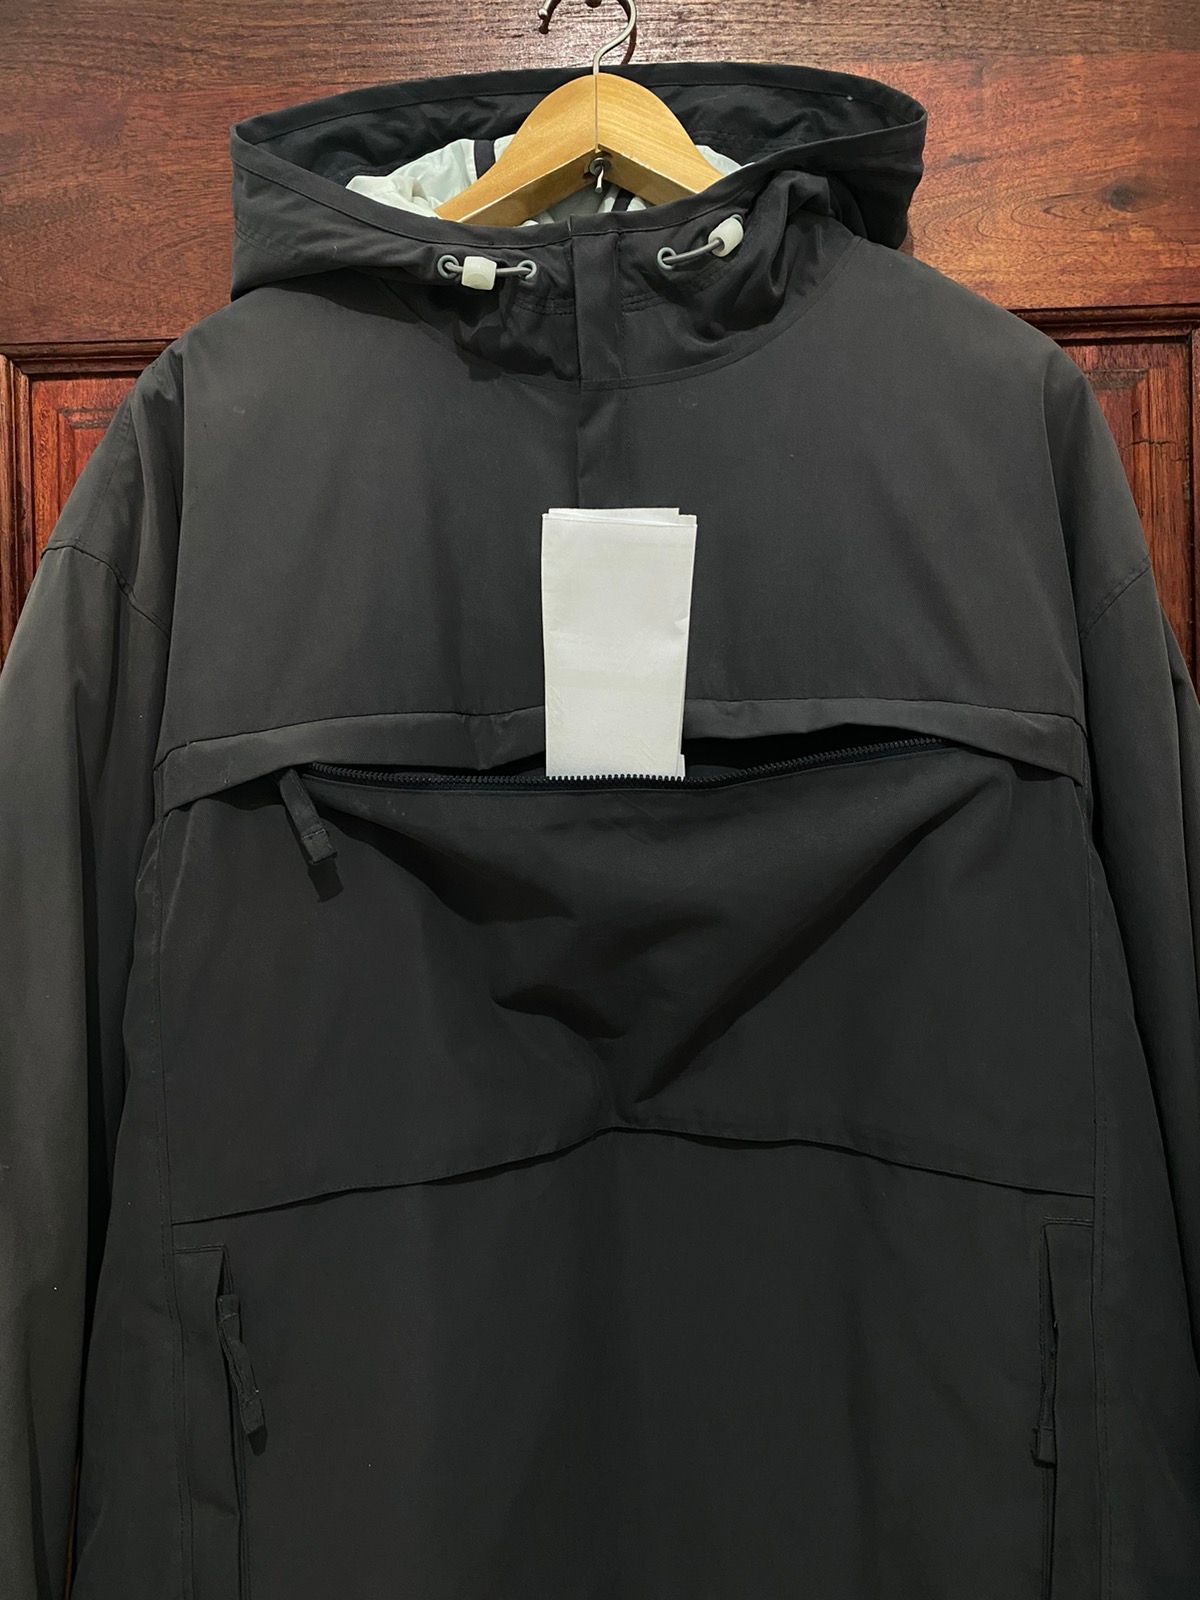 Nike Pullover Anorak Hoodie Jacket Nice Design - 4